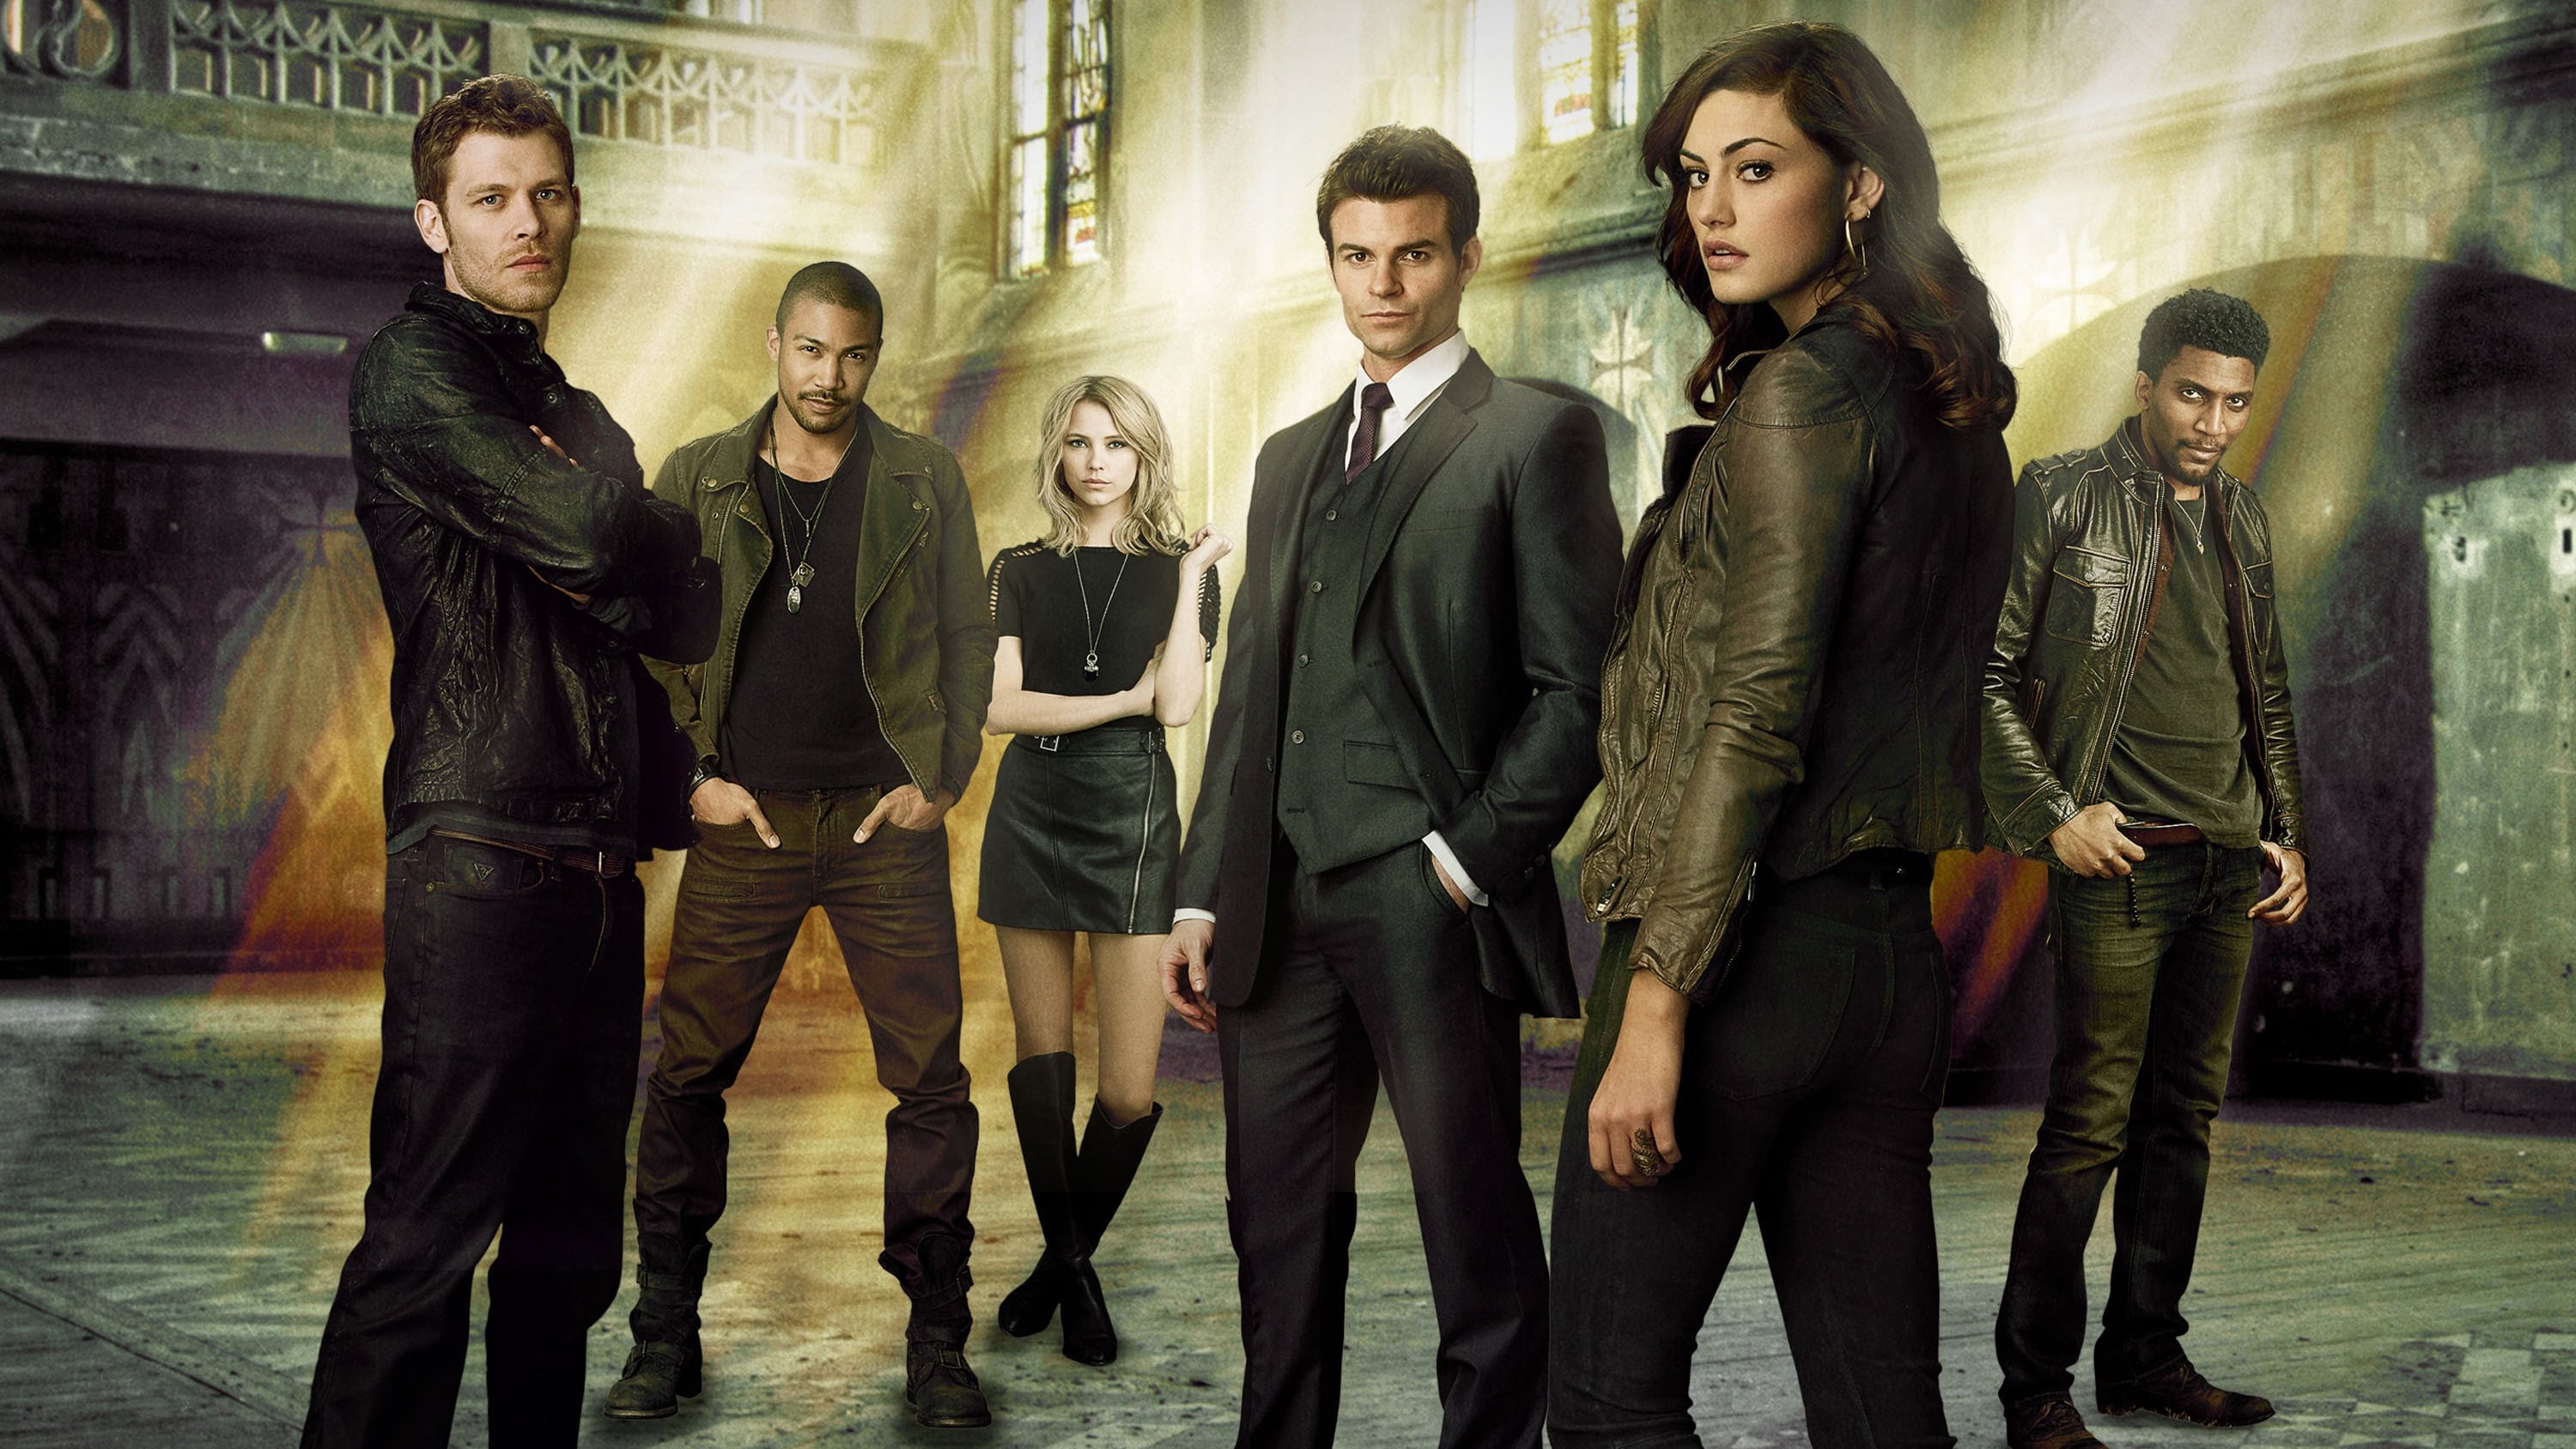 Watch The Originals Season 1 Online (Full Episodes)